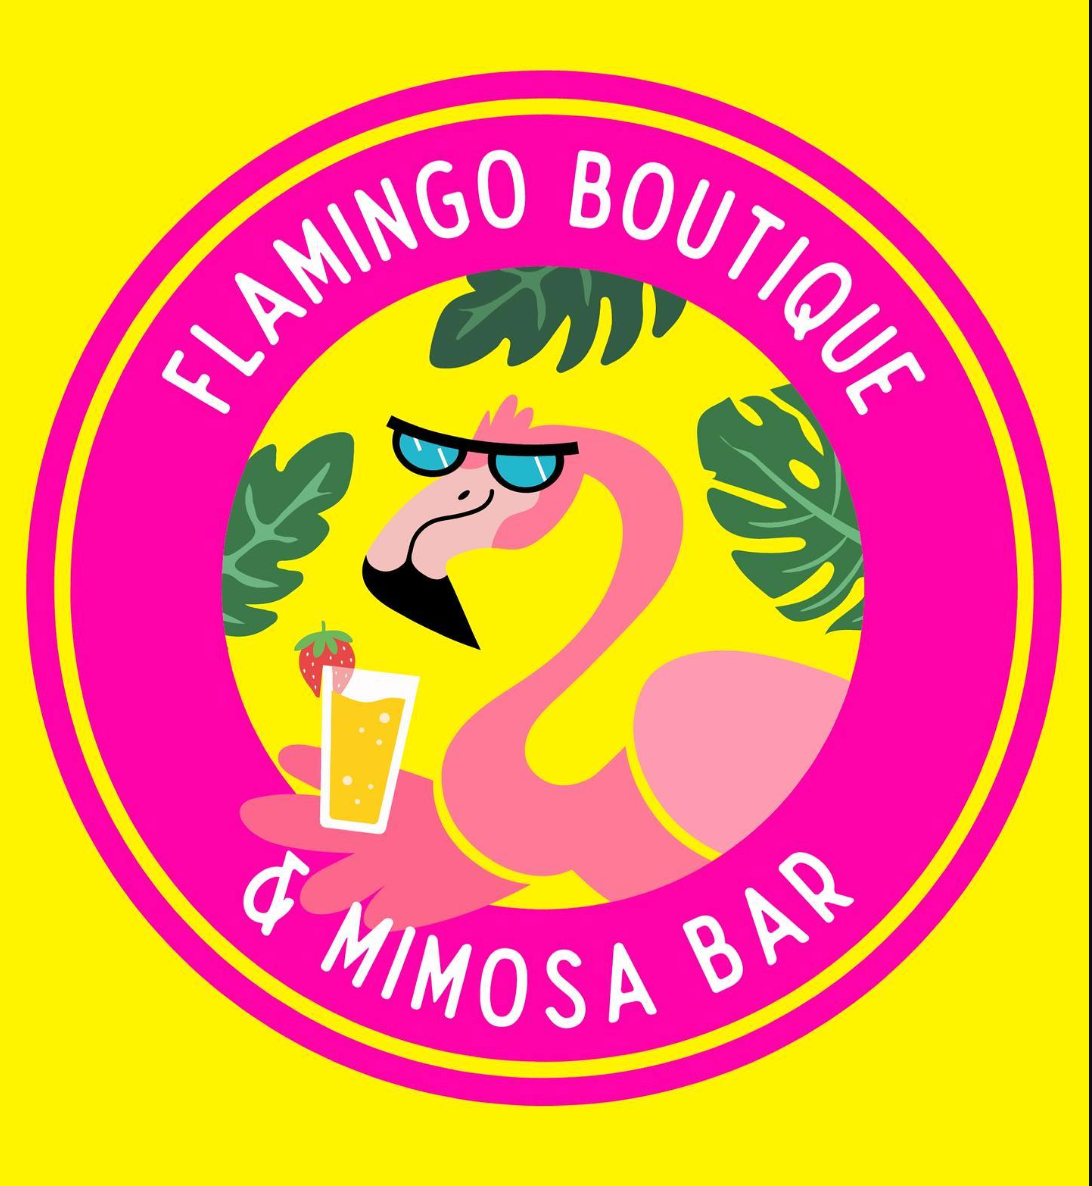 #163 - Flamingo boutique & Mimosa Bar